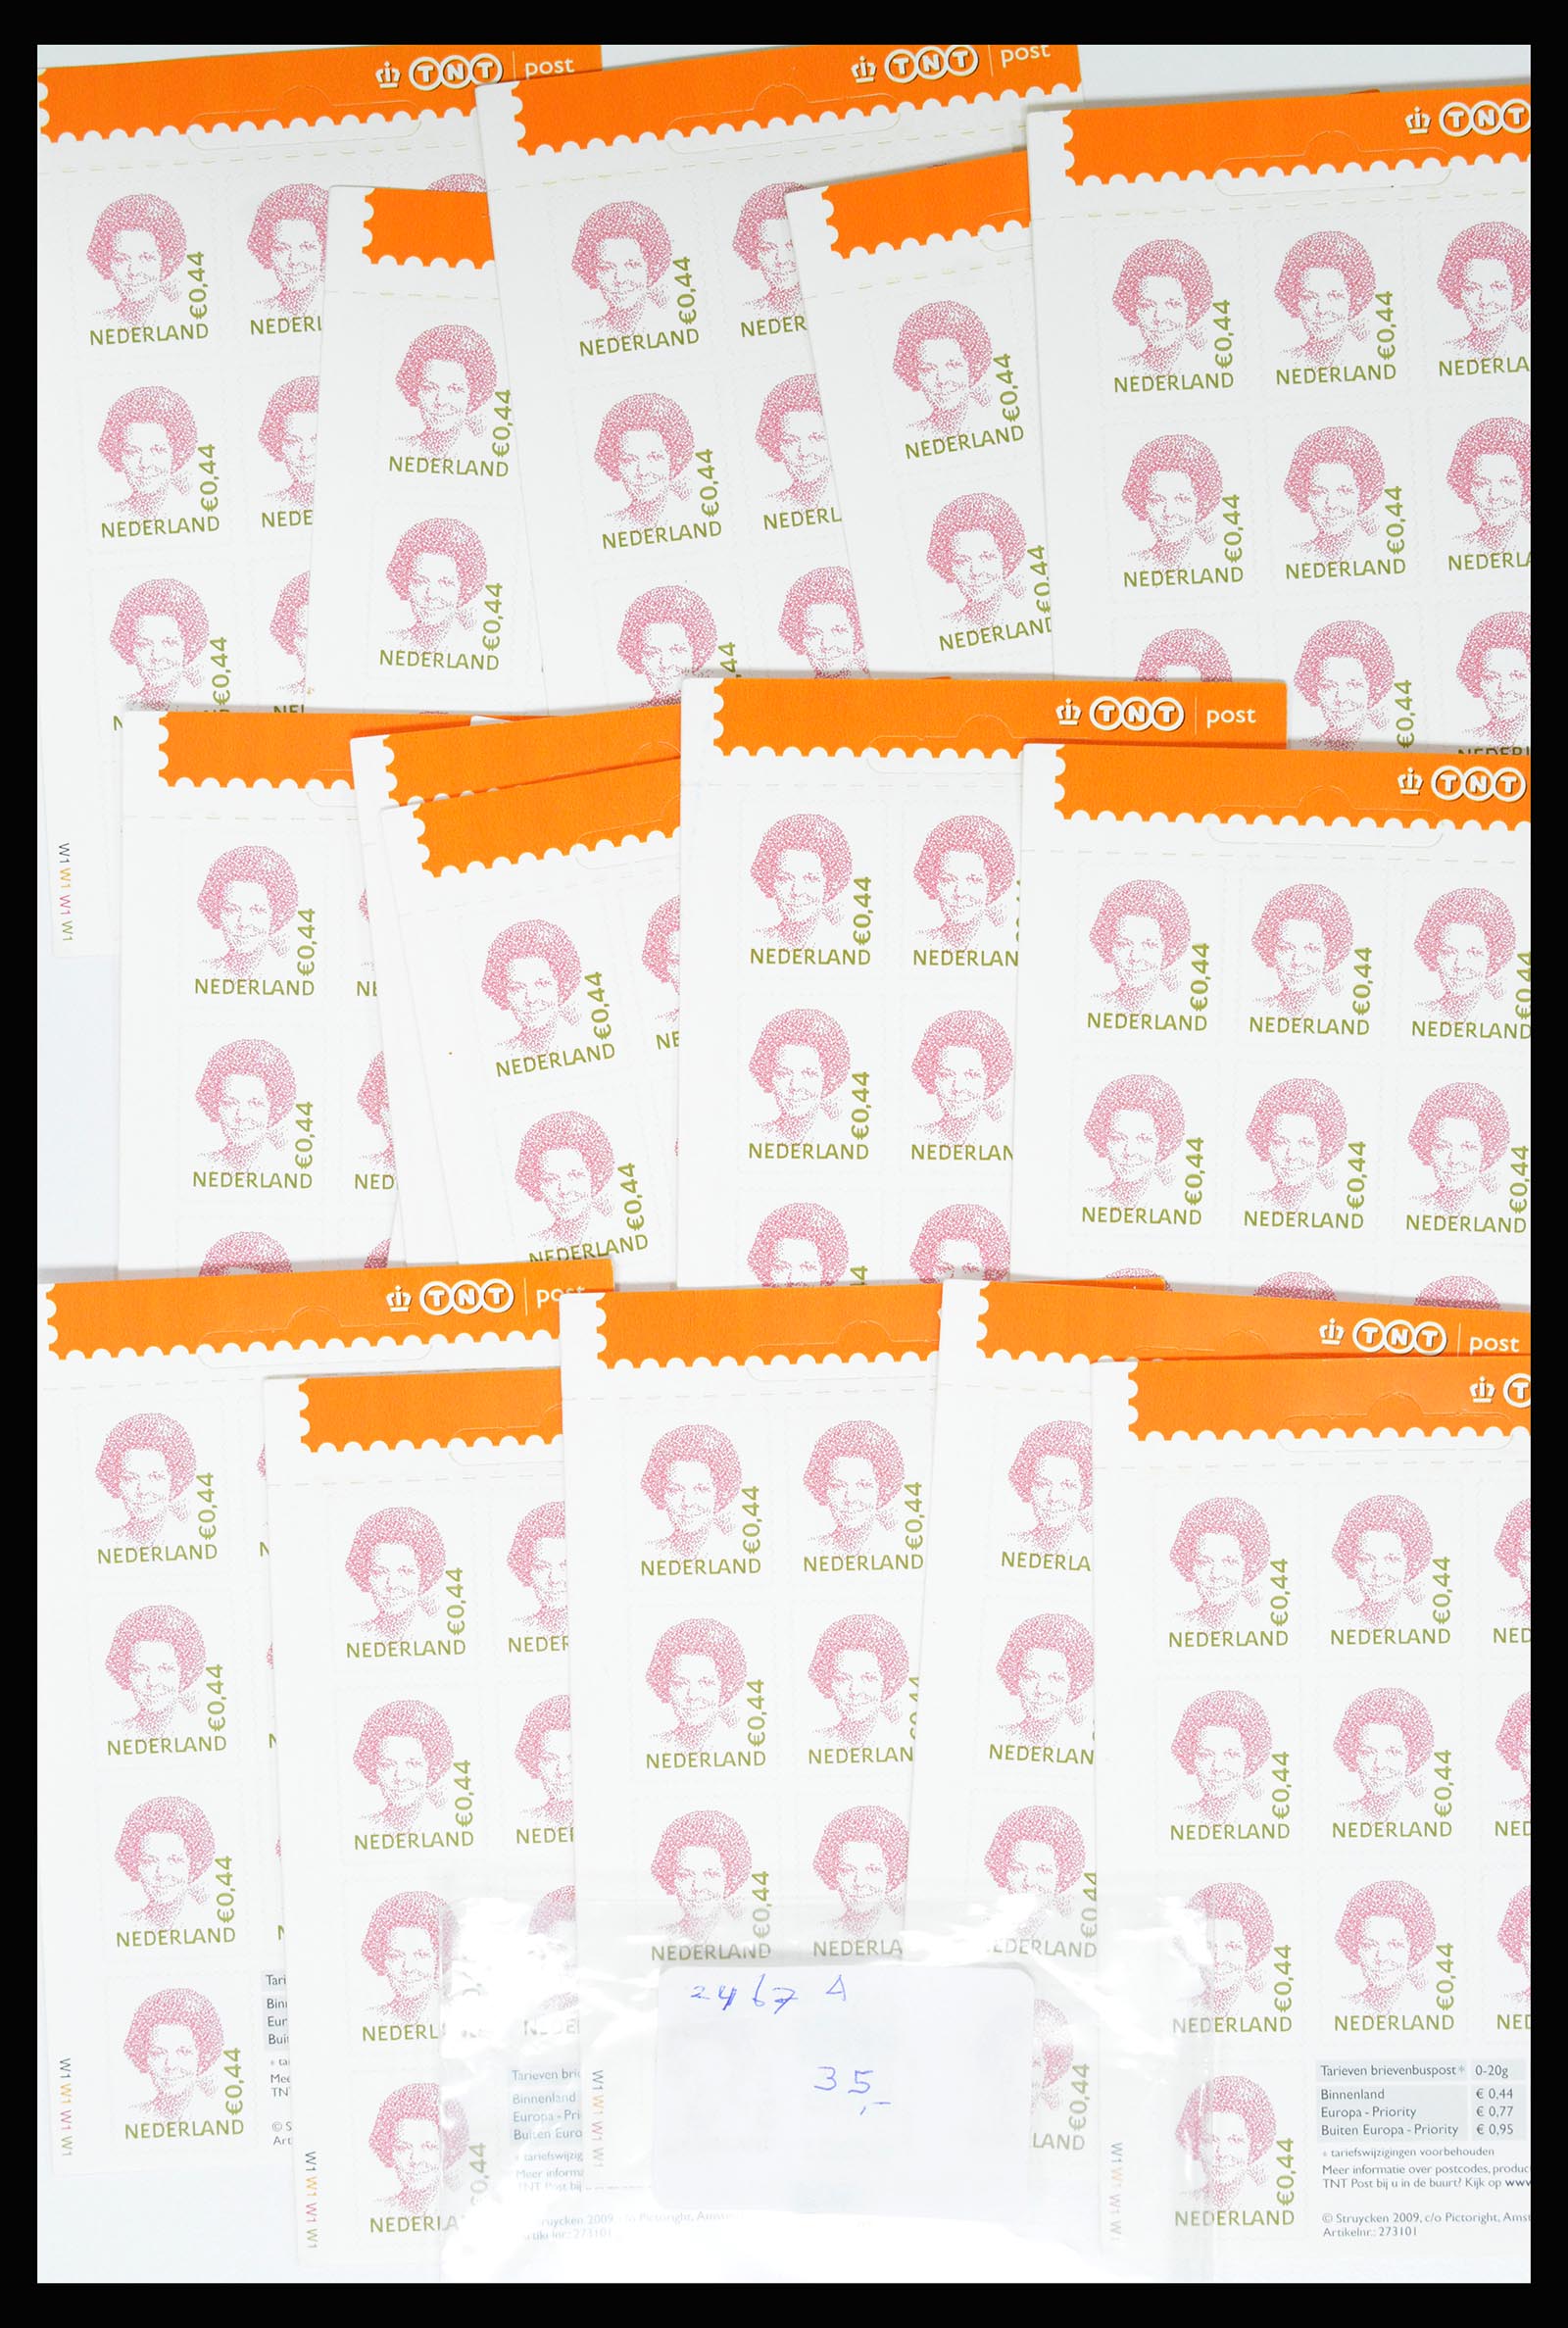 37044 011 - Stamp collection 37044 Netherlands better sheetlets 2002-2009.